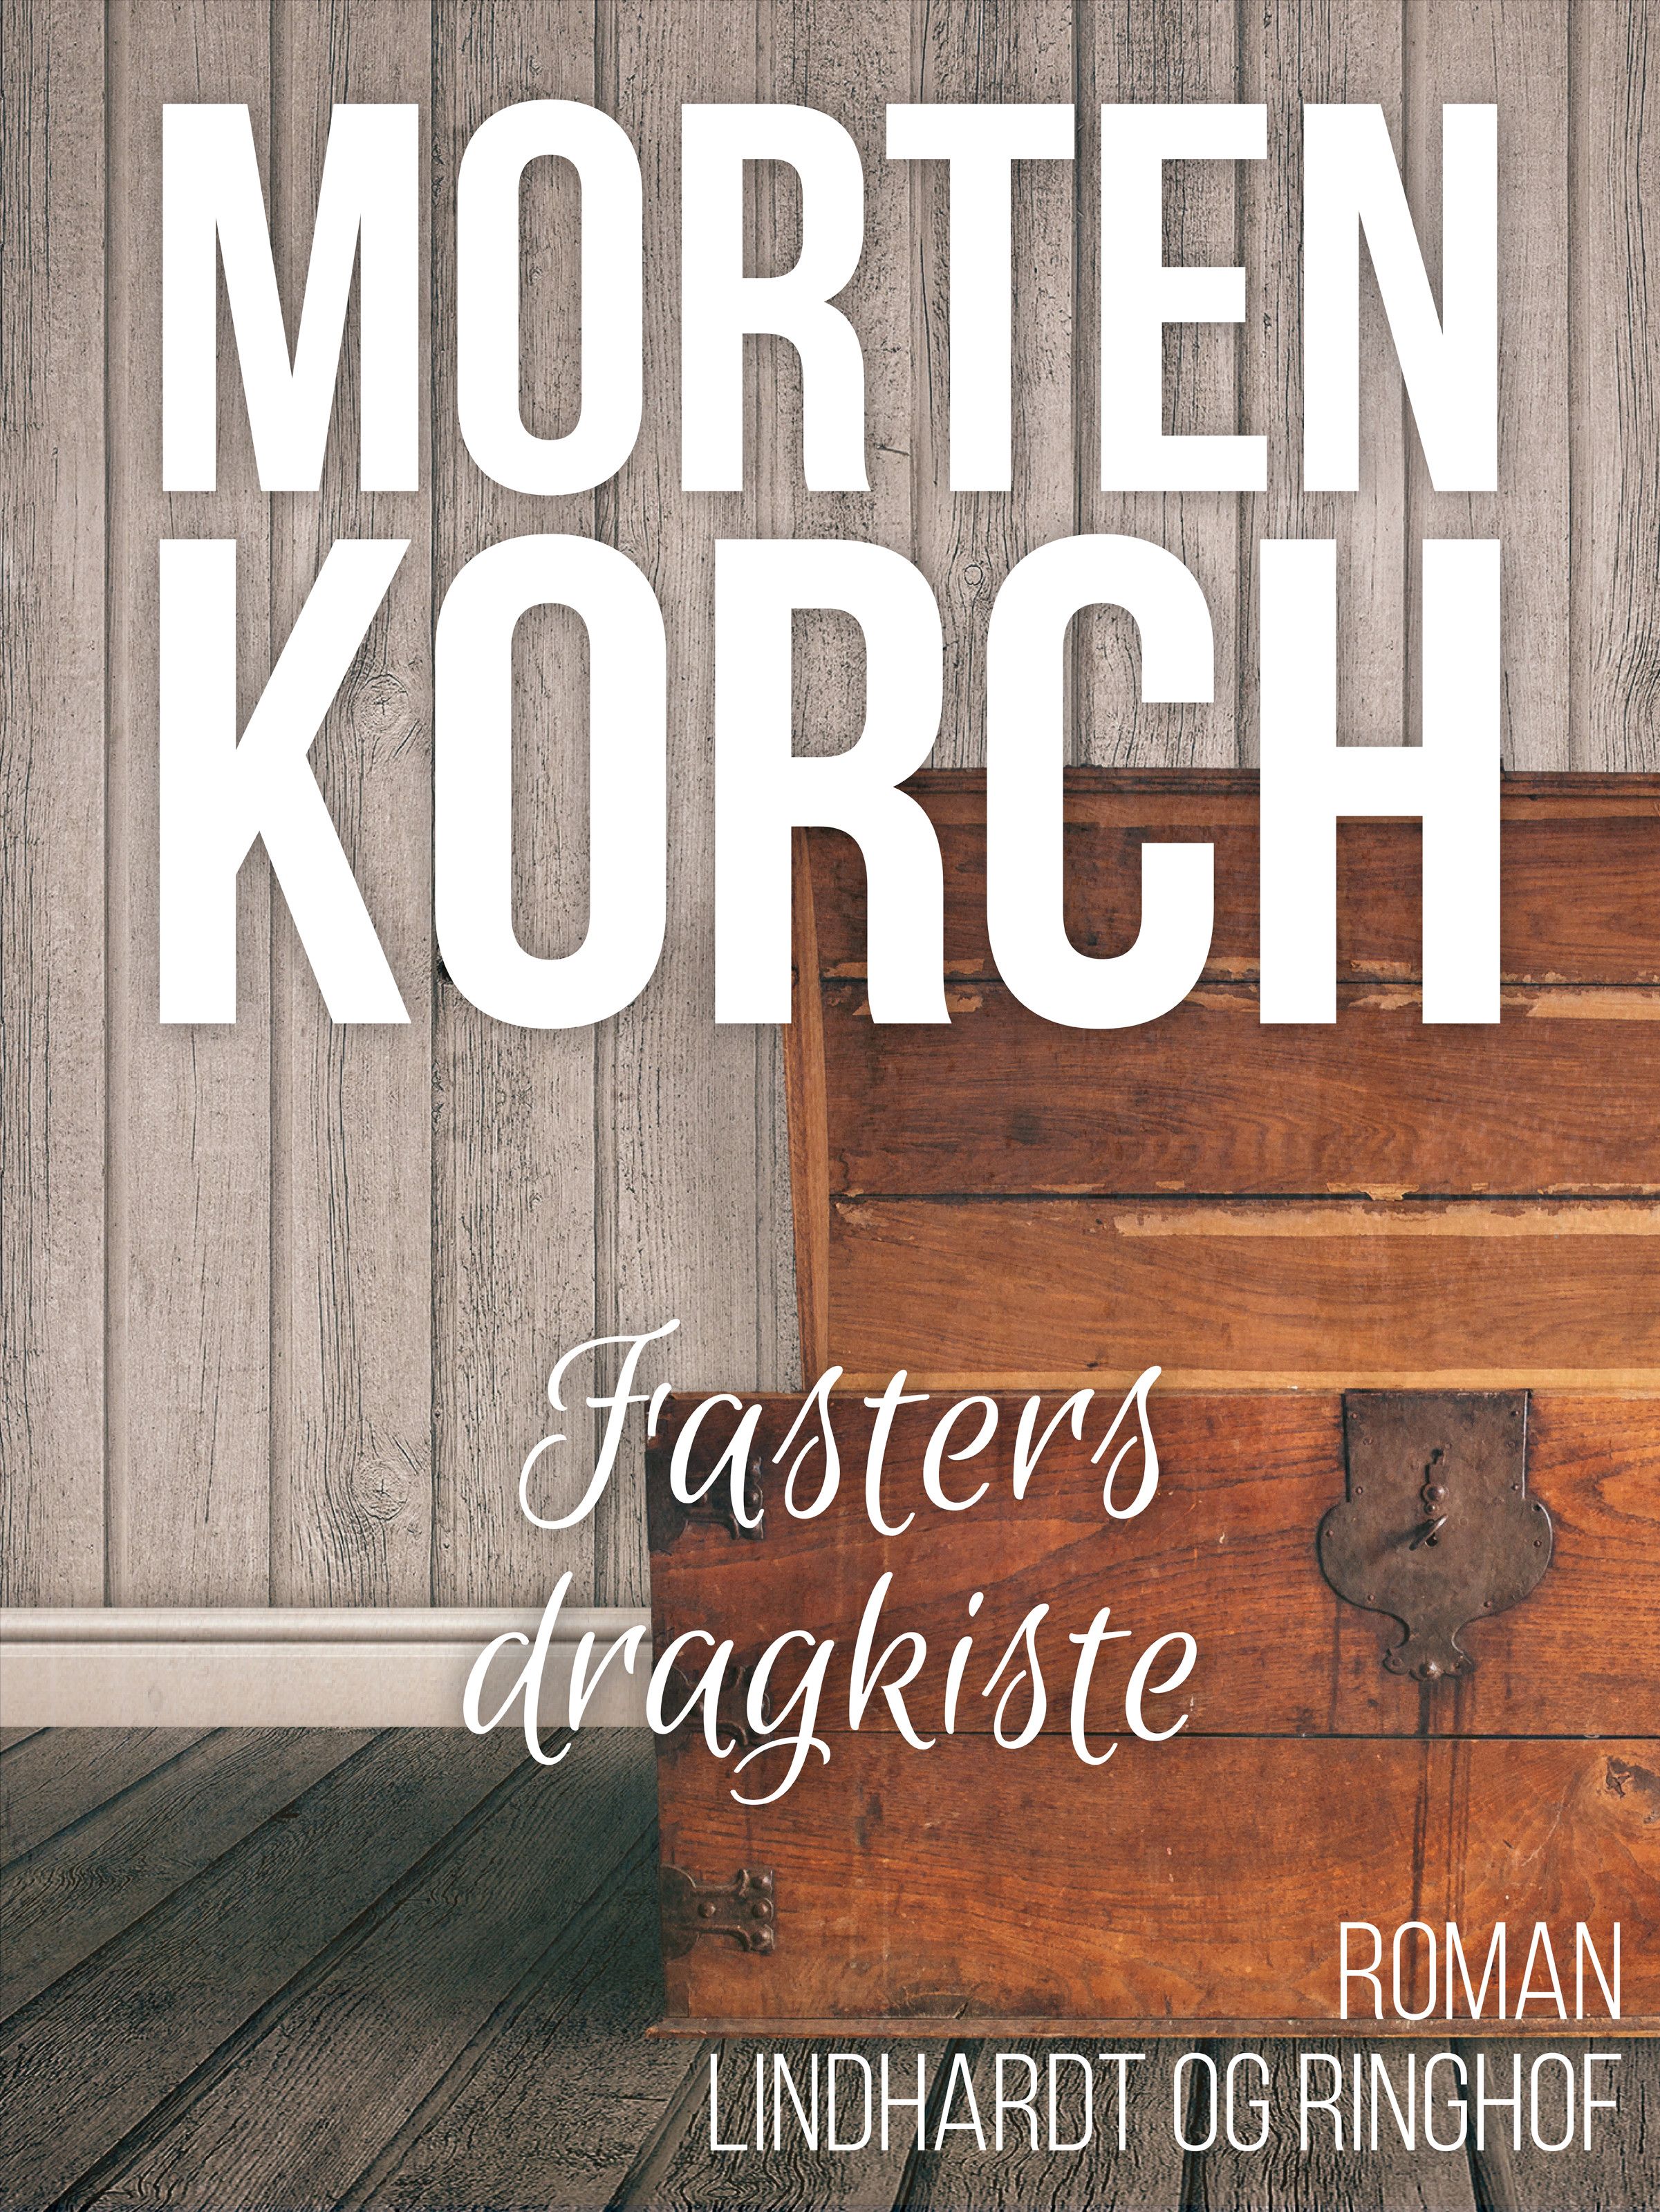 Fasters dragkiste, lydbog af Morten Korch